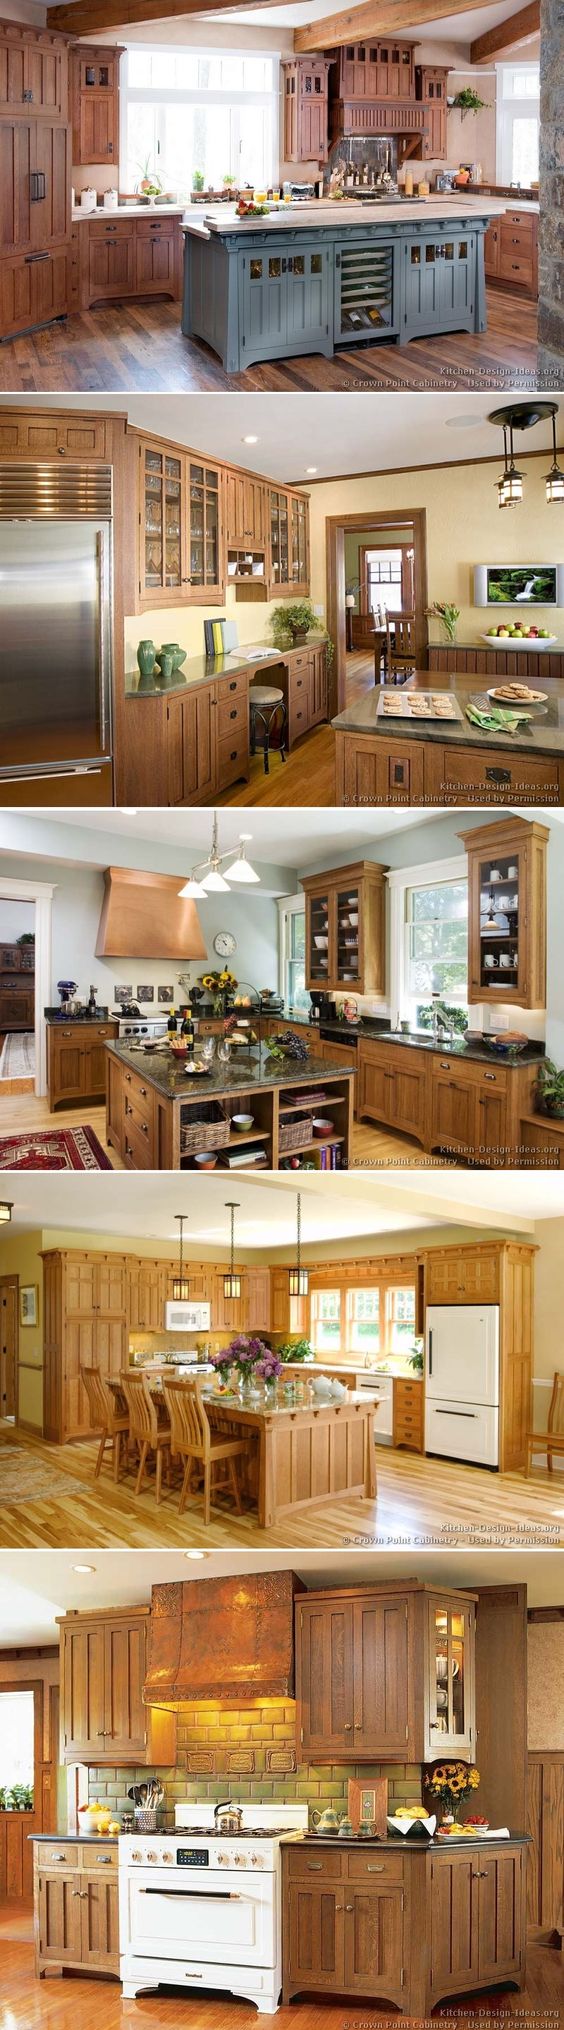 Craftsman kitchen decorative design